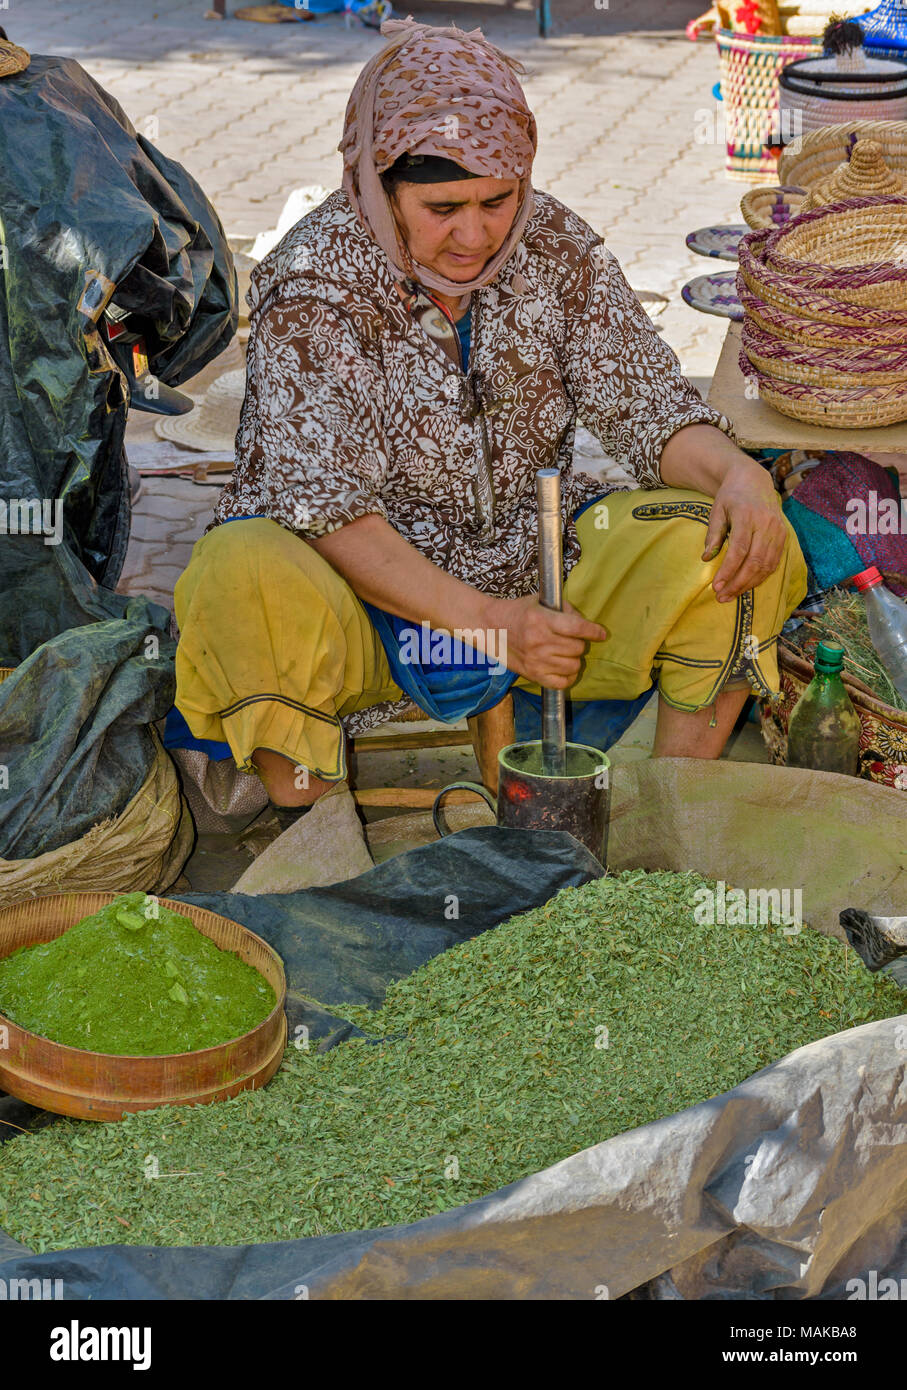 Il Marocco Marrakech Jemaa el Fna MEDINA SOUK MERCATO BERBERO LAWSONIA INERMIS POUNDING l'henna foglie per farne una polvere verde Foto Stock